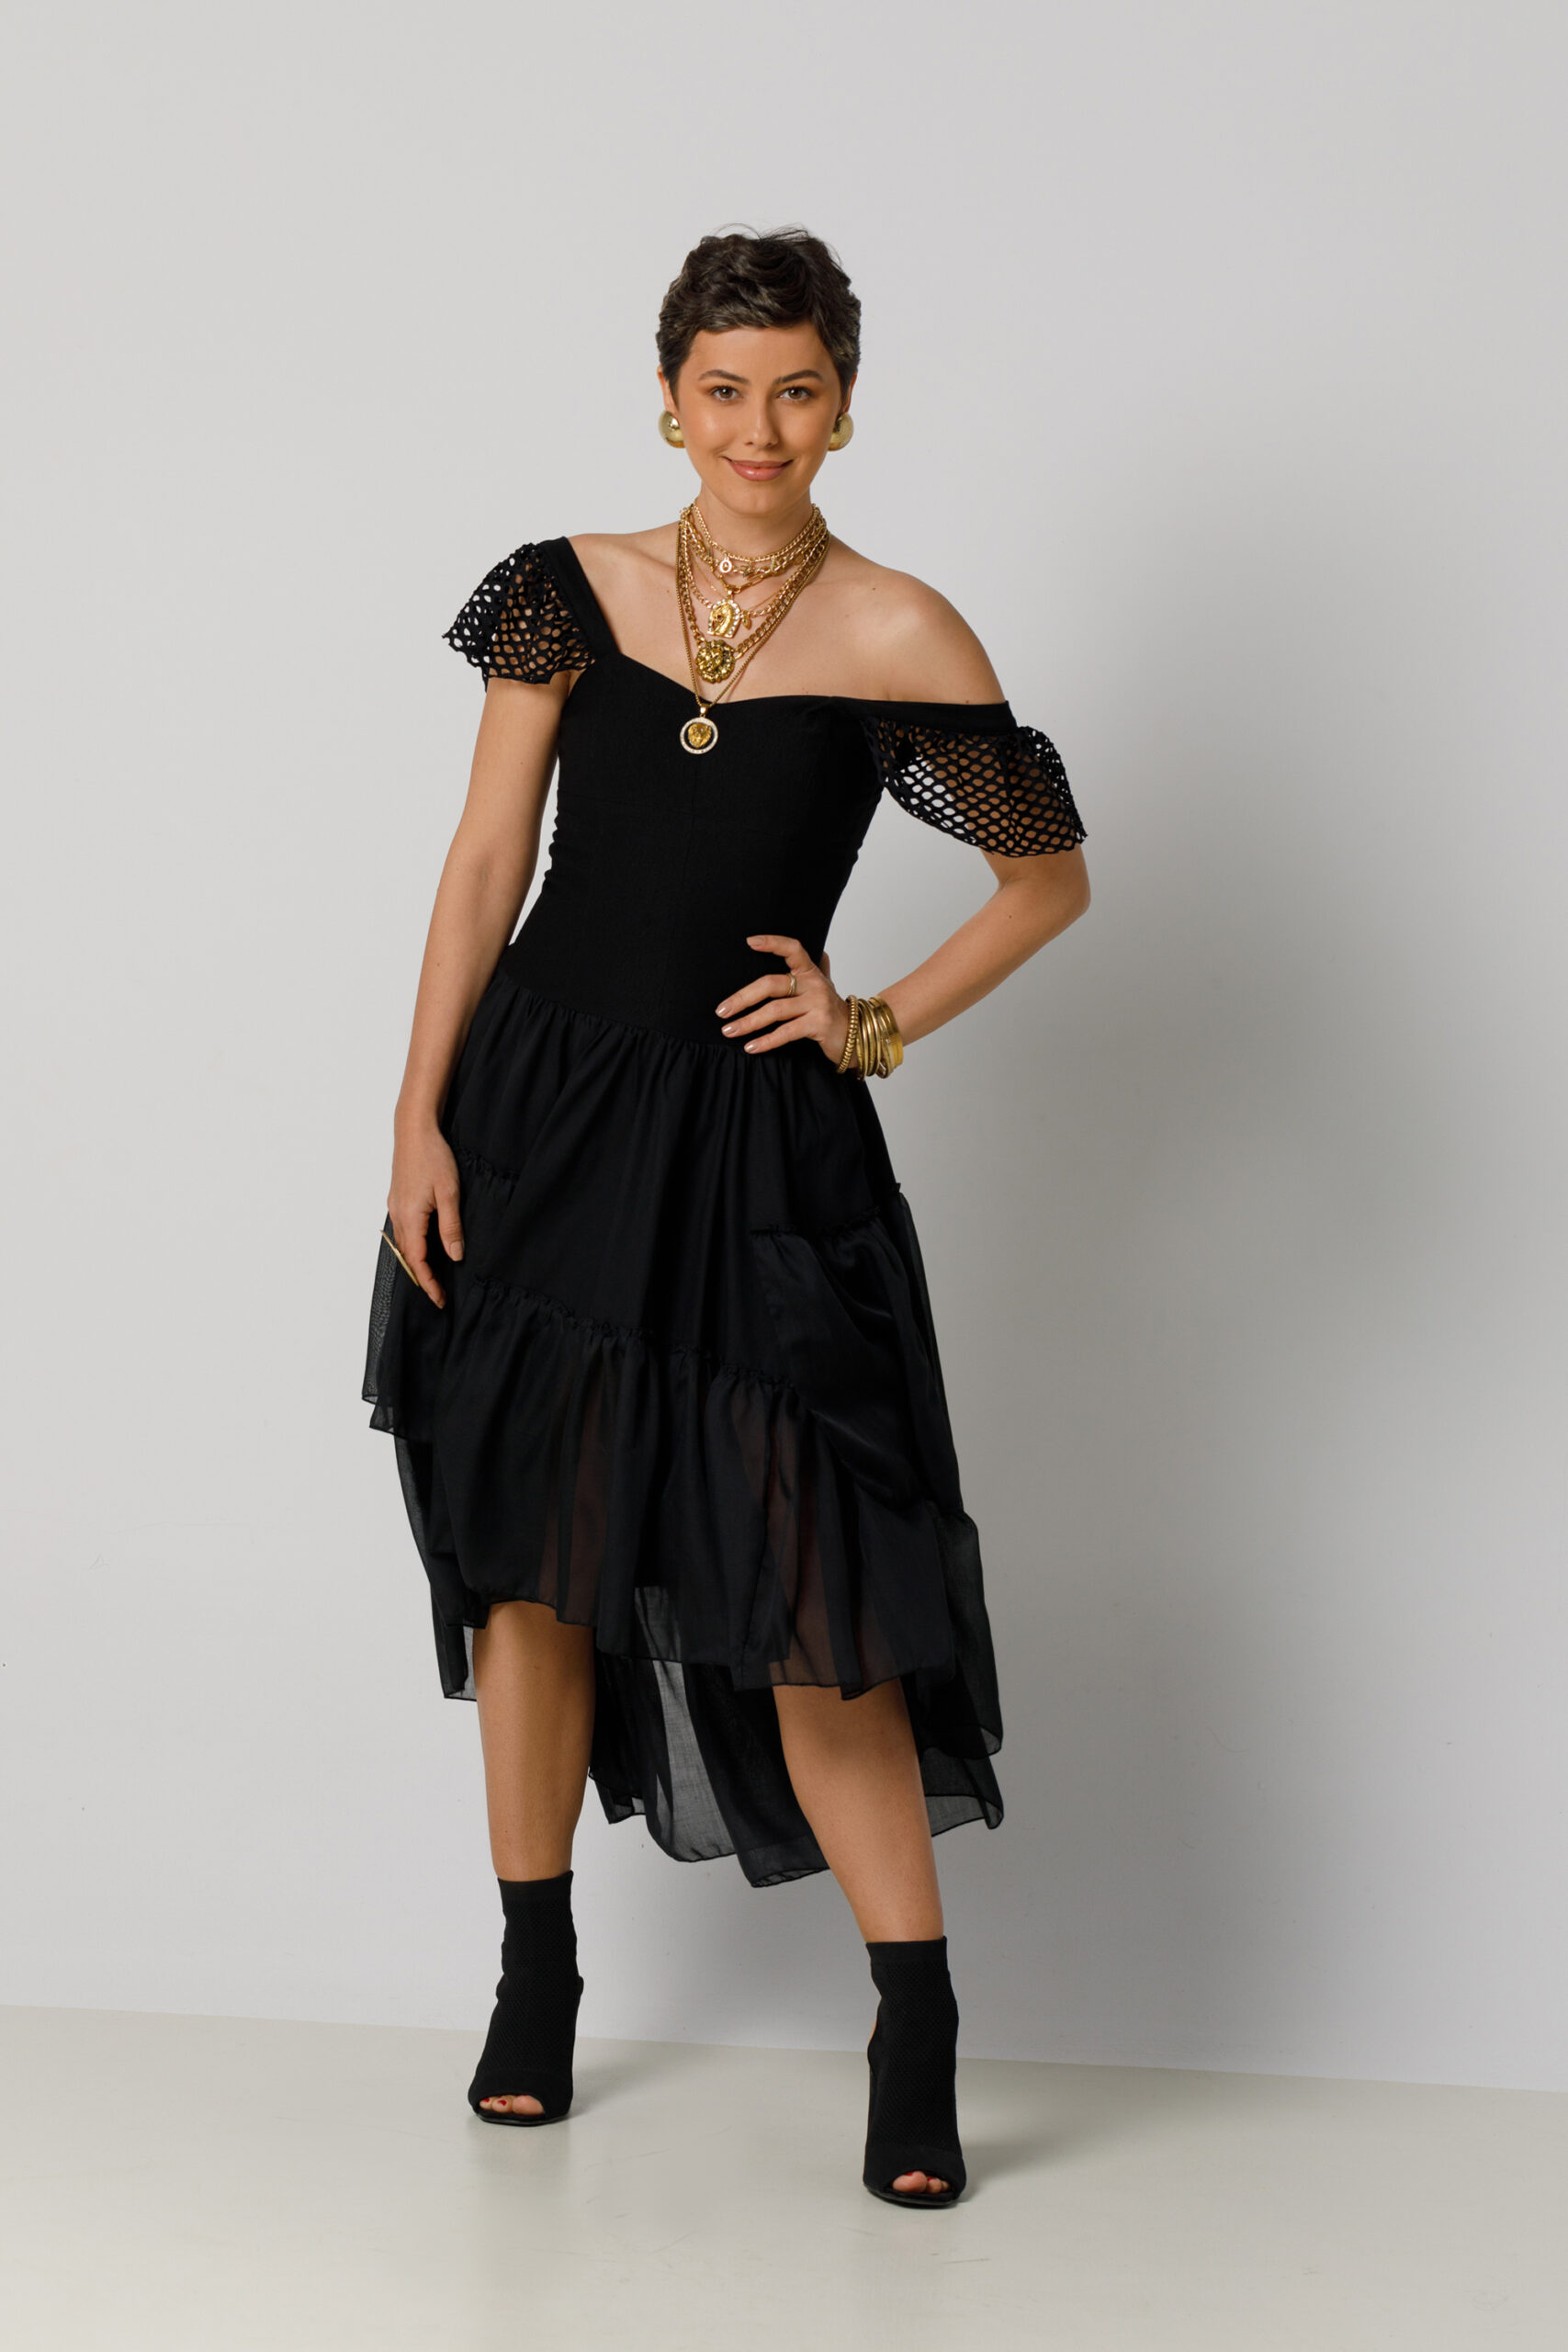 Rochie VALY casual cu corset si trena. Materiale naturale, design unicat, cu broderie si aplicatii handmade